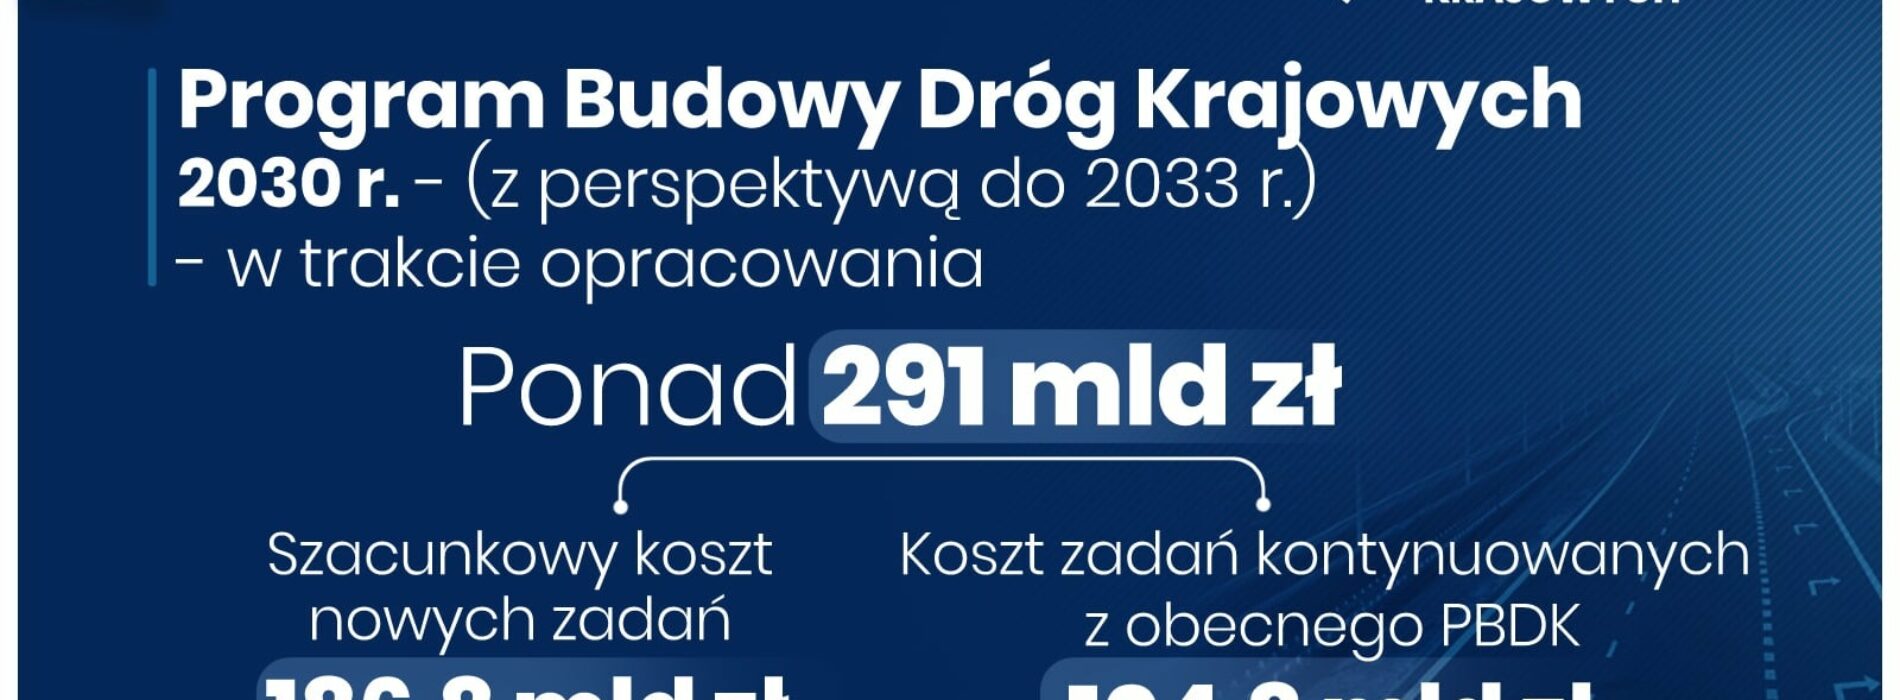 Przybędzie nowych dróg w województwie małopolskim w ramach Rządowego Programu Budowy Dróg Krajowych 2030